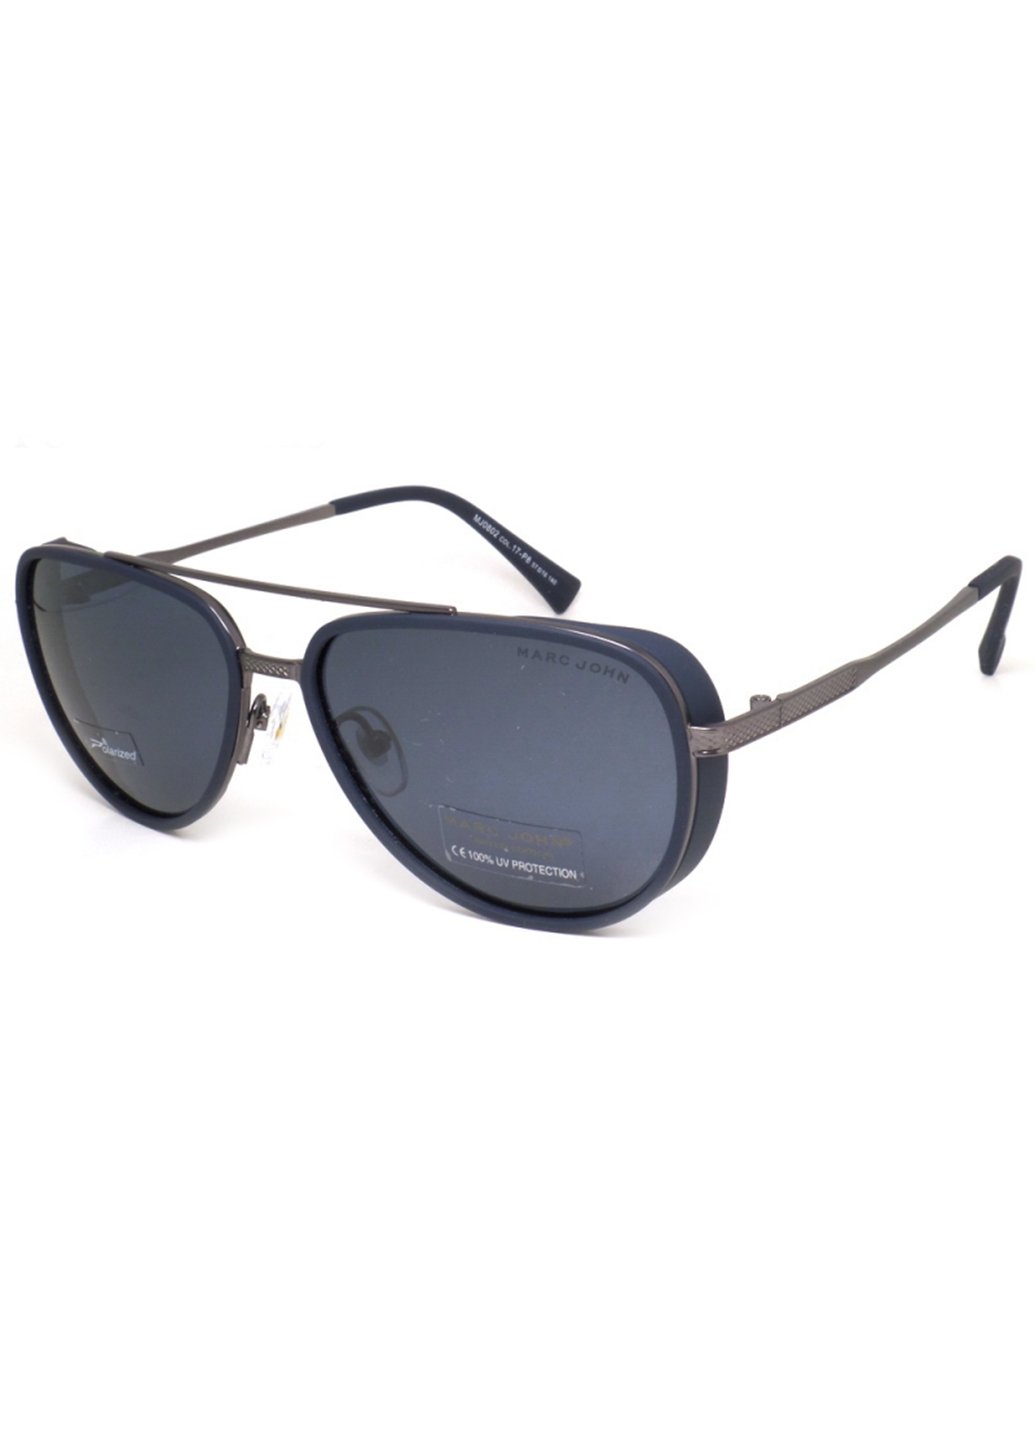 Купить Мужские солнцезащитные очки Marc John с поляризацией MJ0802 190003 - Черный в интернет-магазине